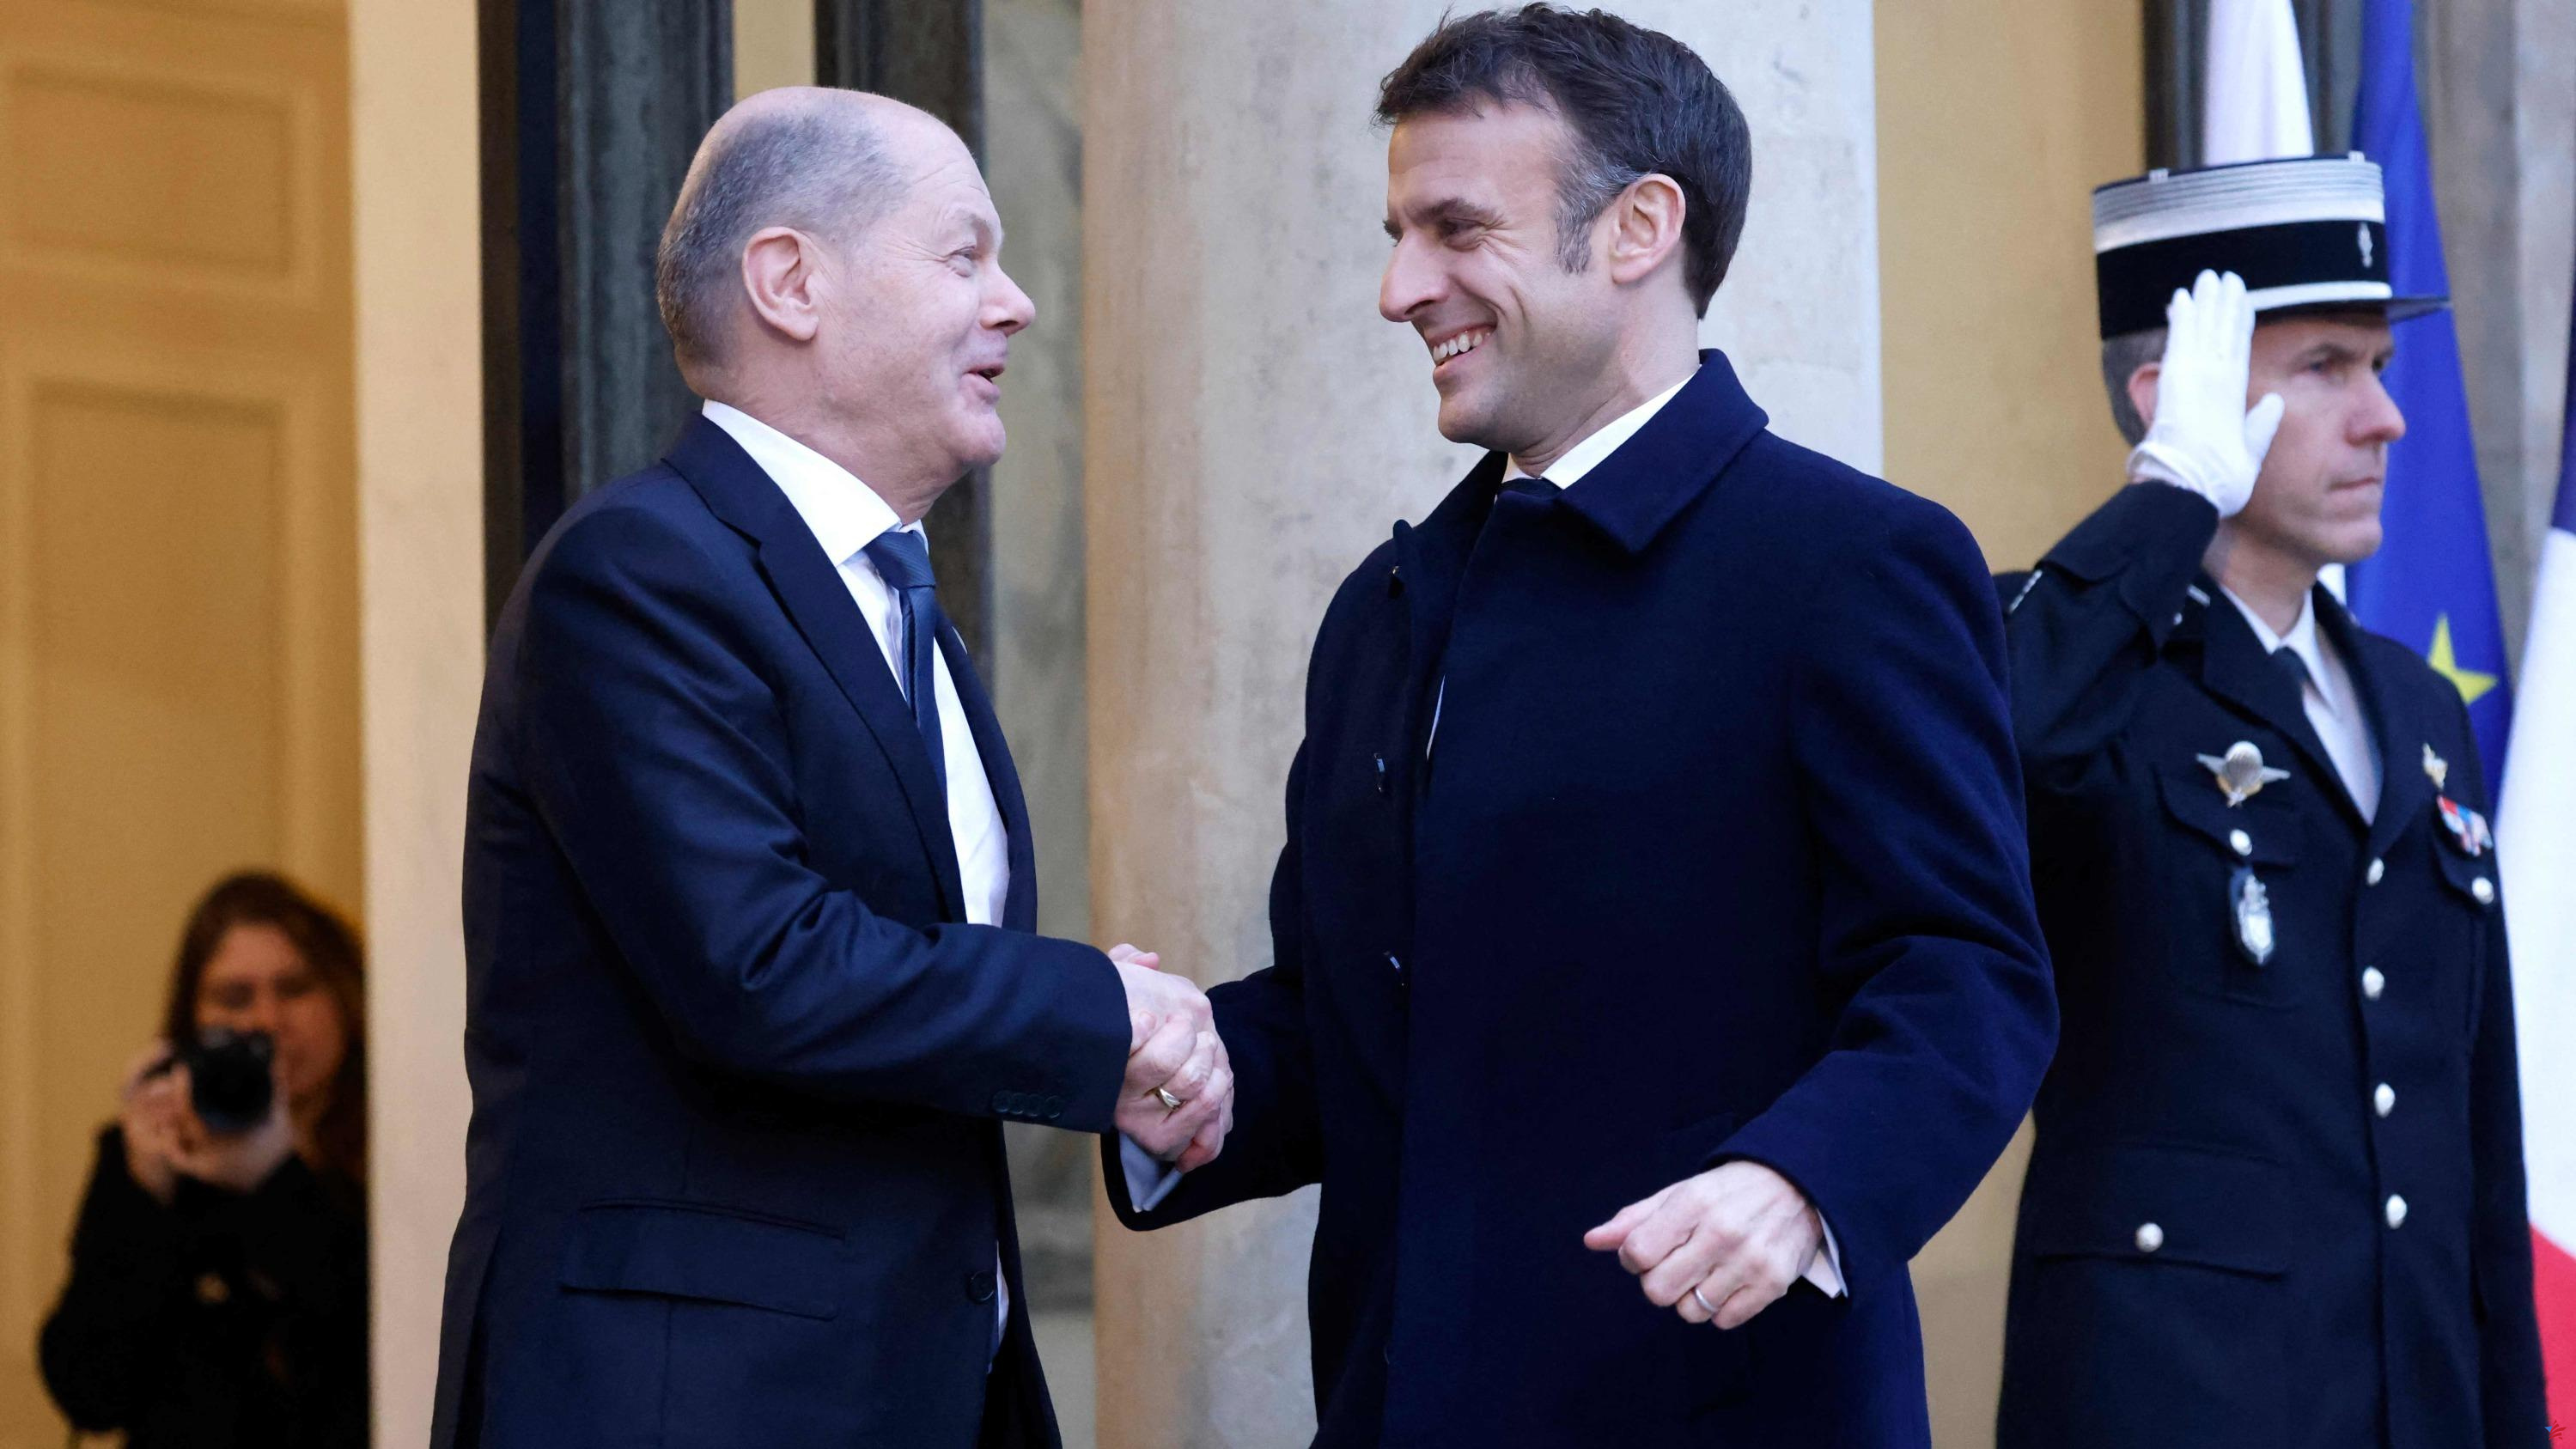 Guerra en Ucrania: “No hay ningún choque franco-alemán”, asegura el jefe de la diplomacia francesa